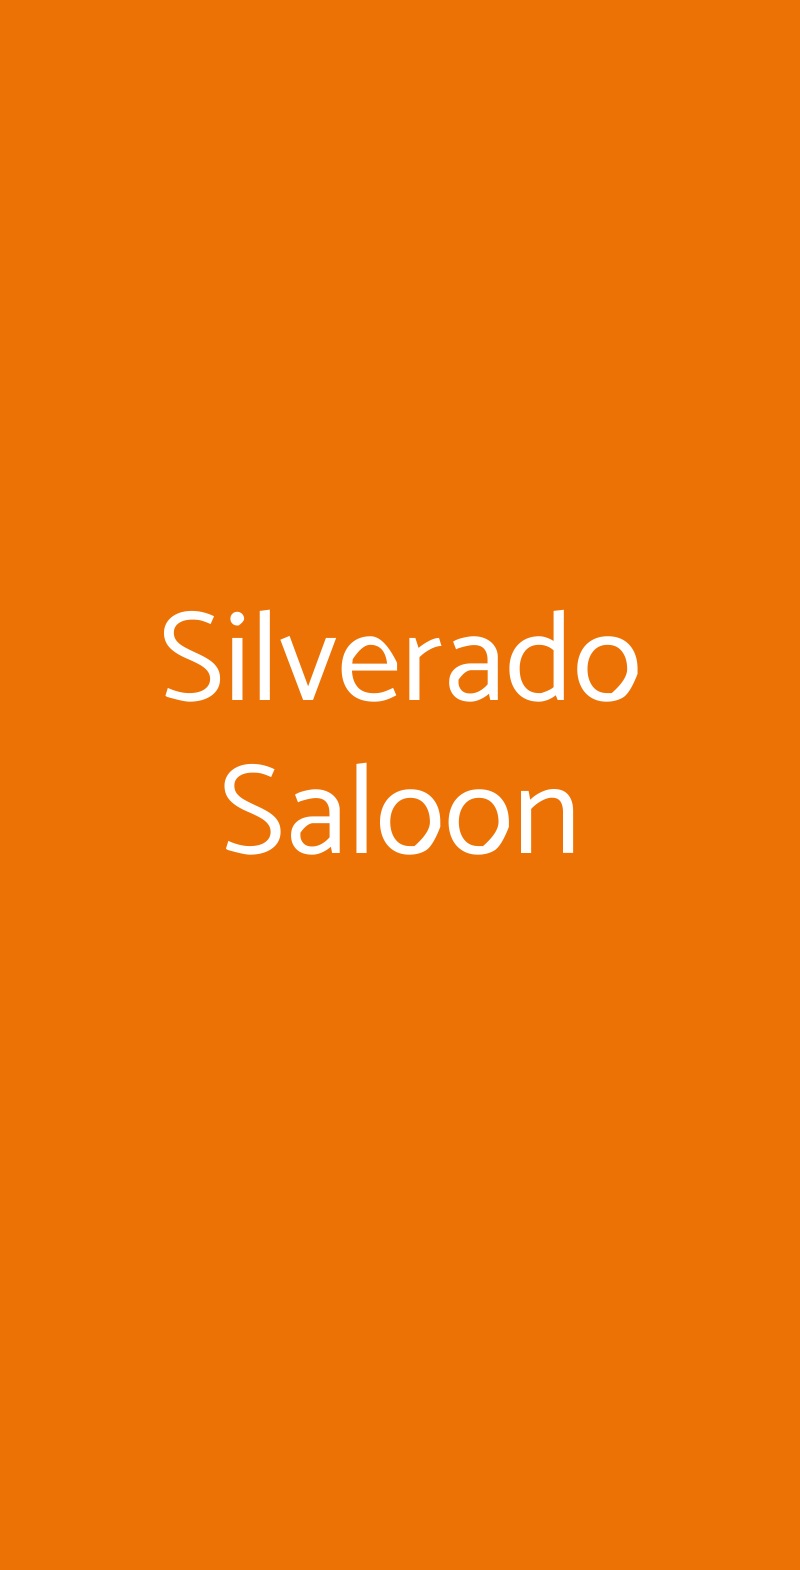 Silverado Saloon Milano menù 1 pagina